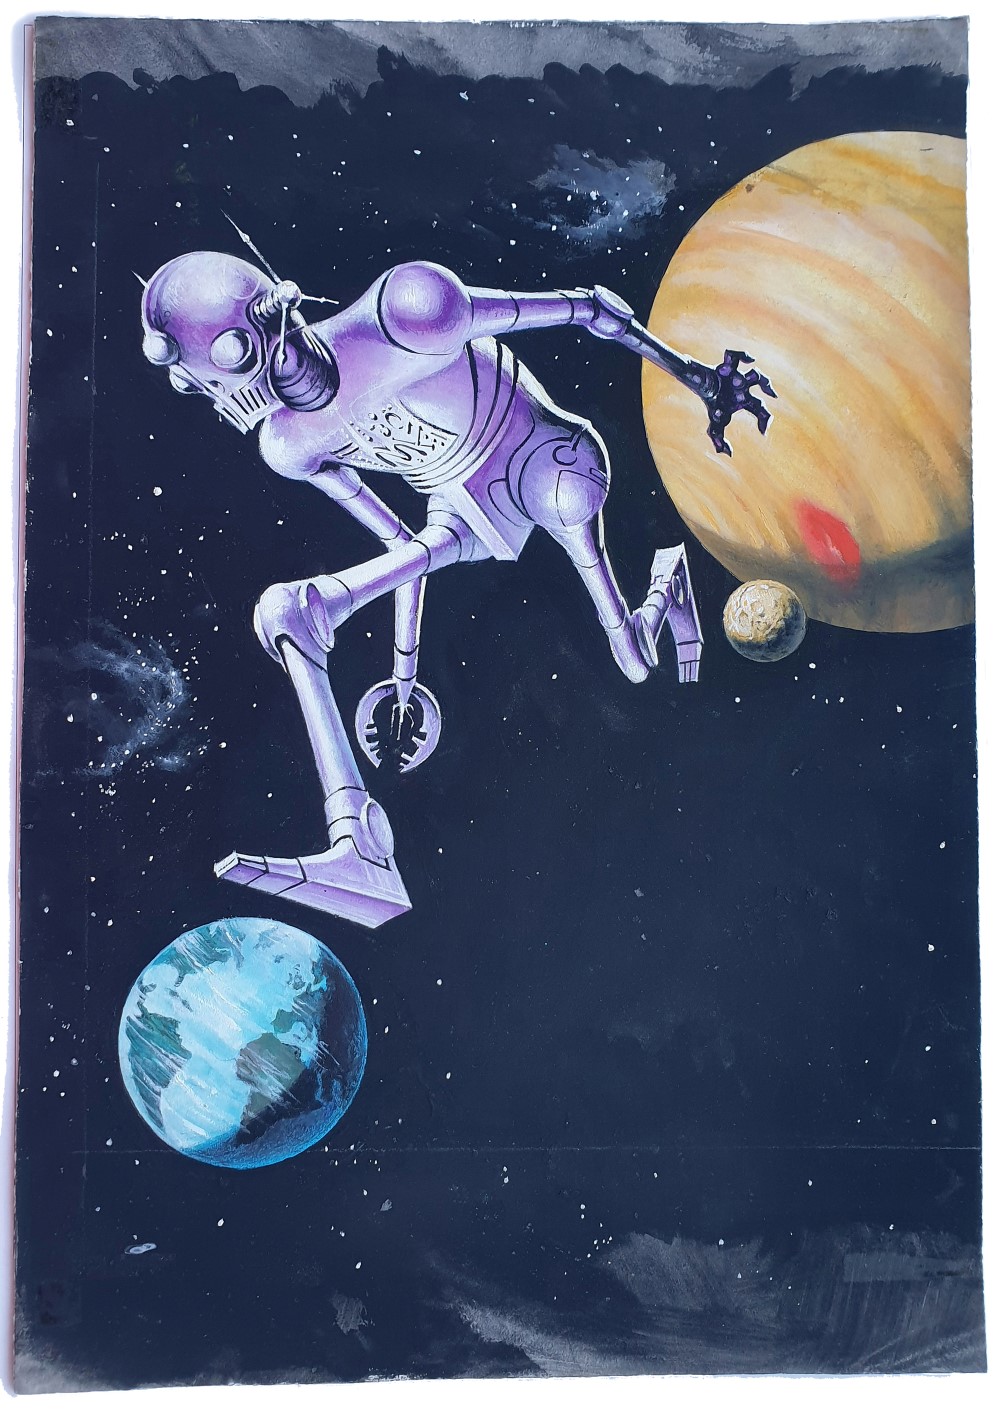 Utopia Taschenbuch 297, Erich Pabel Verlag 1967, Lester Del Rey: Der unschuldige Roboter, The Runaway Robot, Titelbild: Rudolf Sieber-Lonati